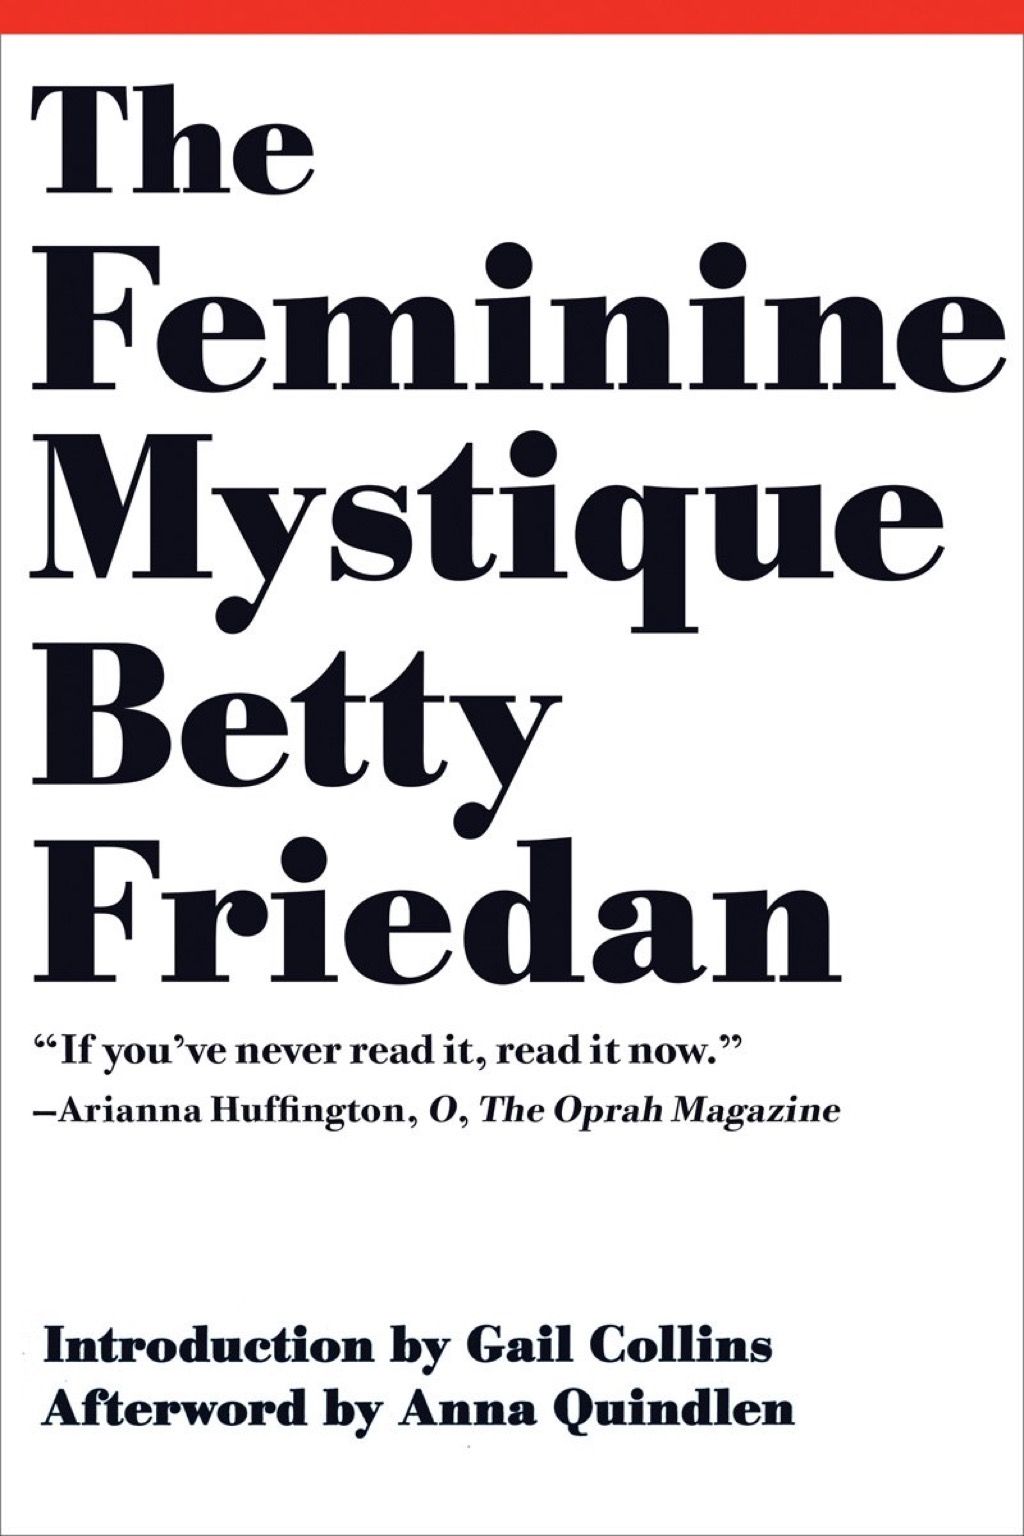 Cărțile Misticii Feminine pe care fiecare femeie ar trebui să le citească la 40 de ani